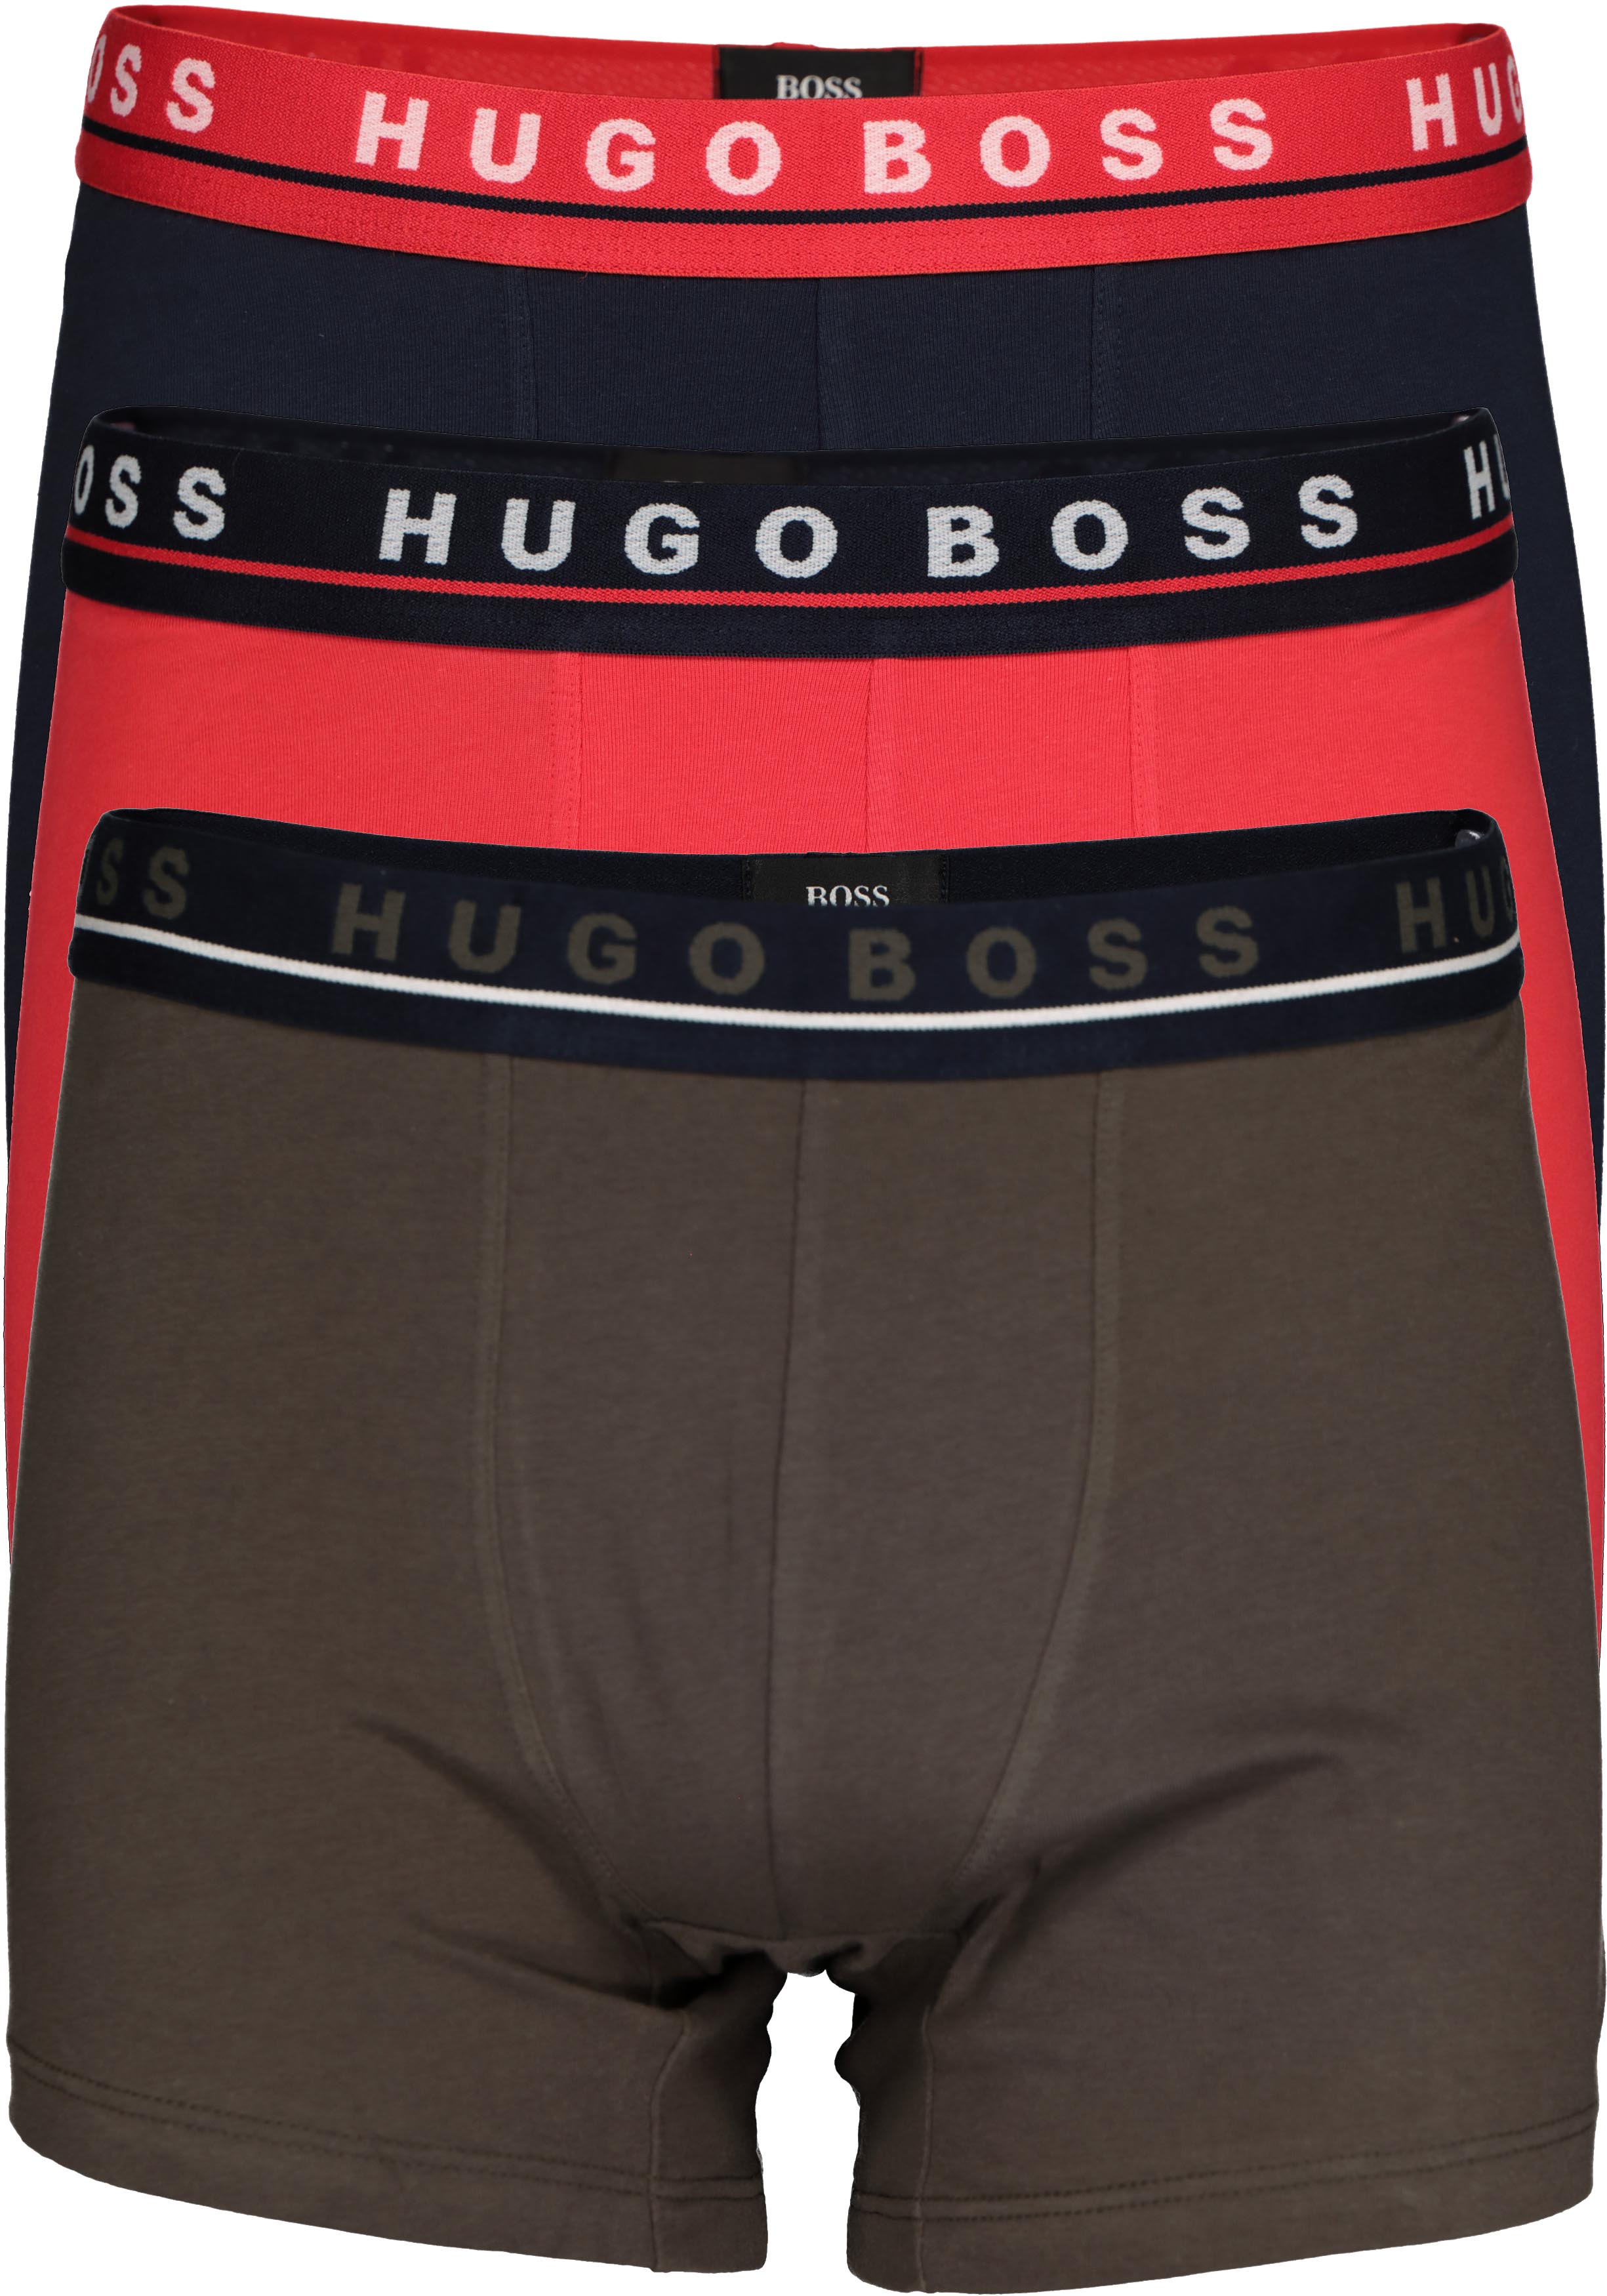 meesteres concept reinigen HUGO BOSS boxer brief (3-pack), heren boxers normale lengte, blauw, rood...  - SALE tot 50% korting - Gratis verzending en retour